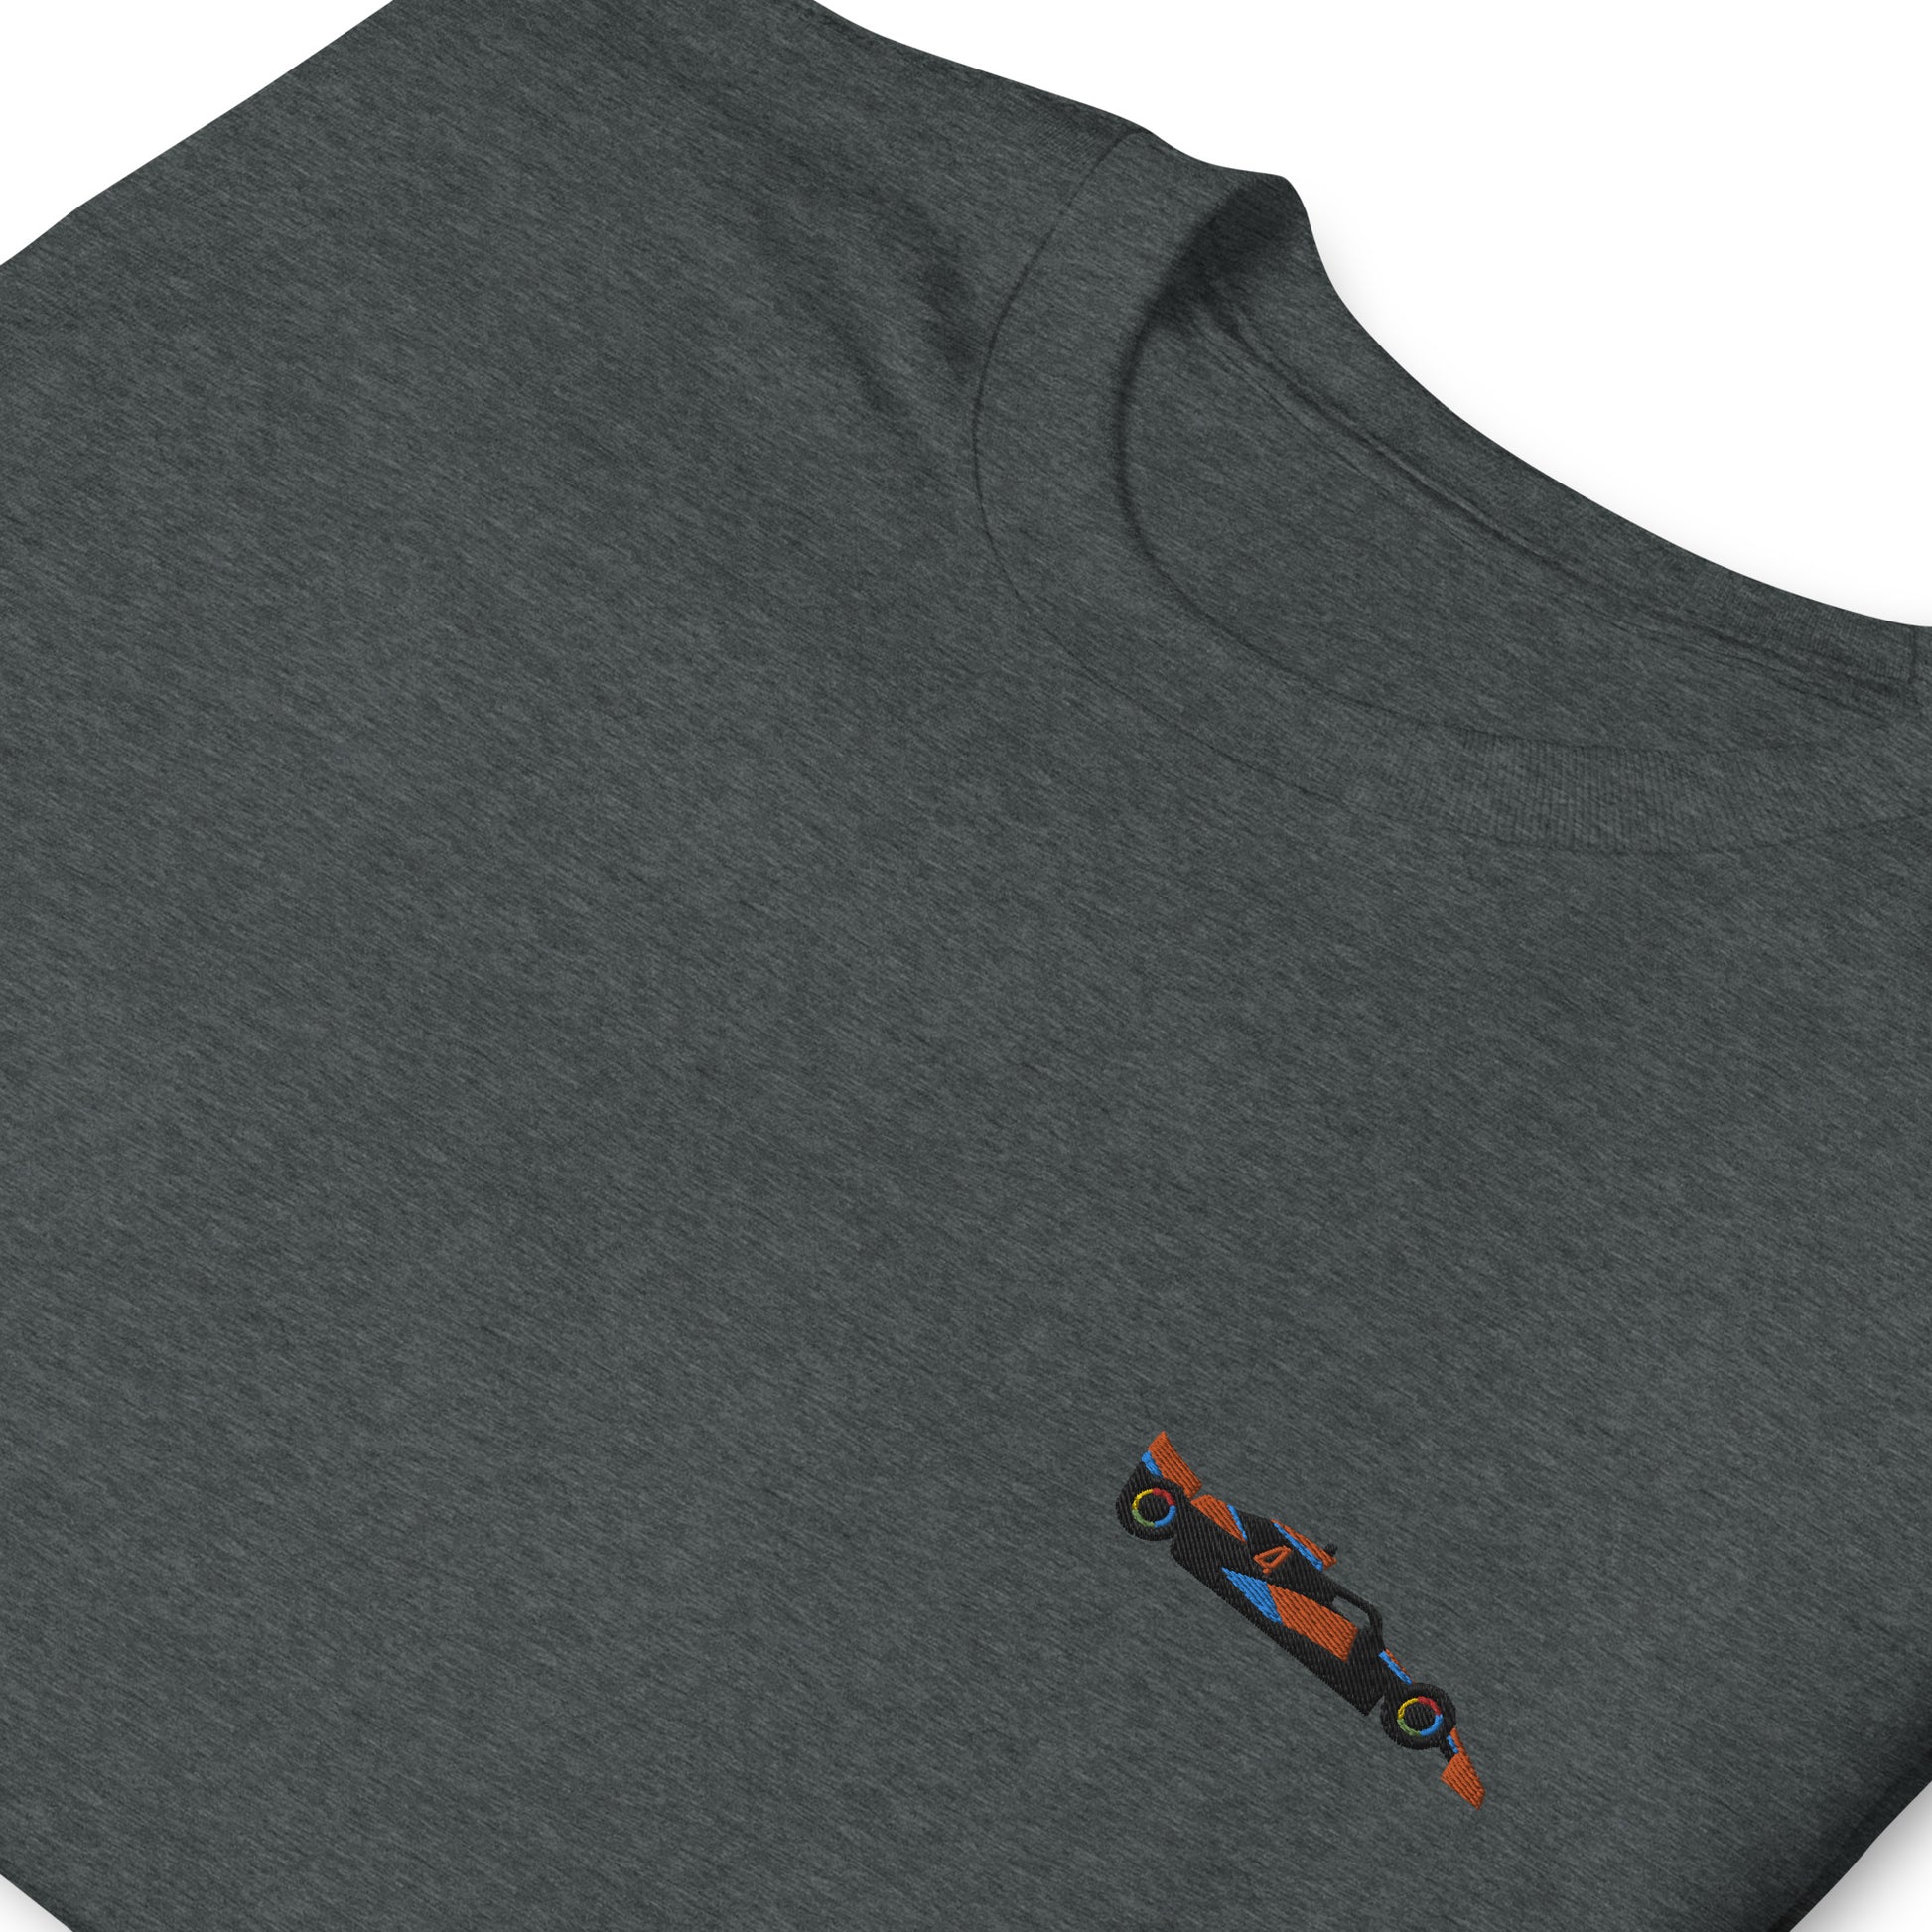 Embroidered Lando Norris McLaren F1 Car Unisex T-Shirt dark heather